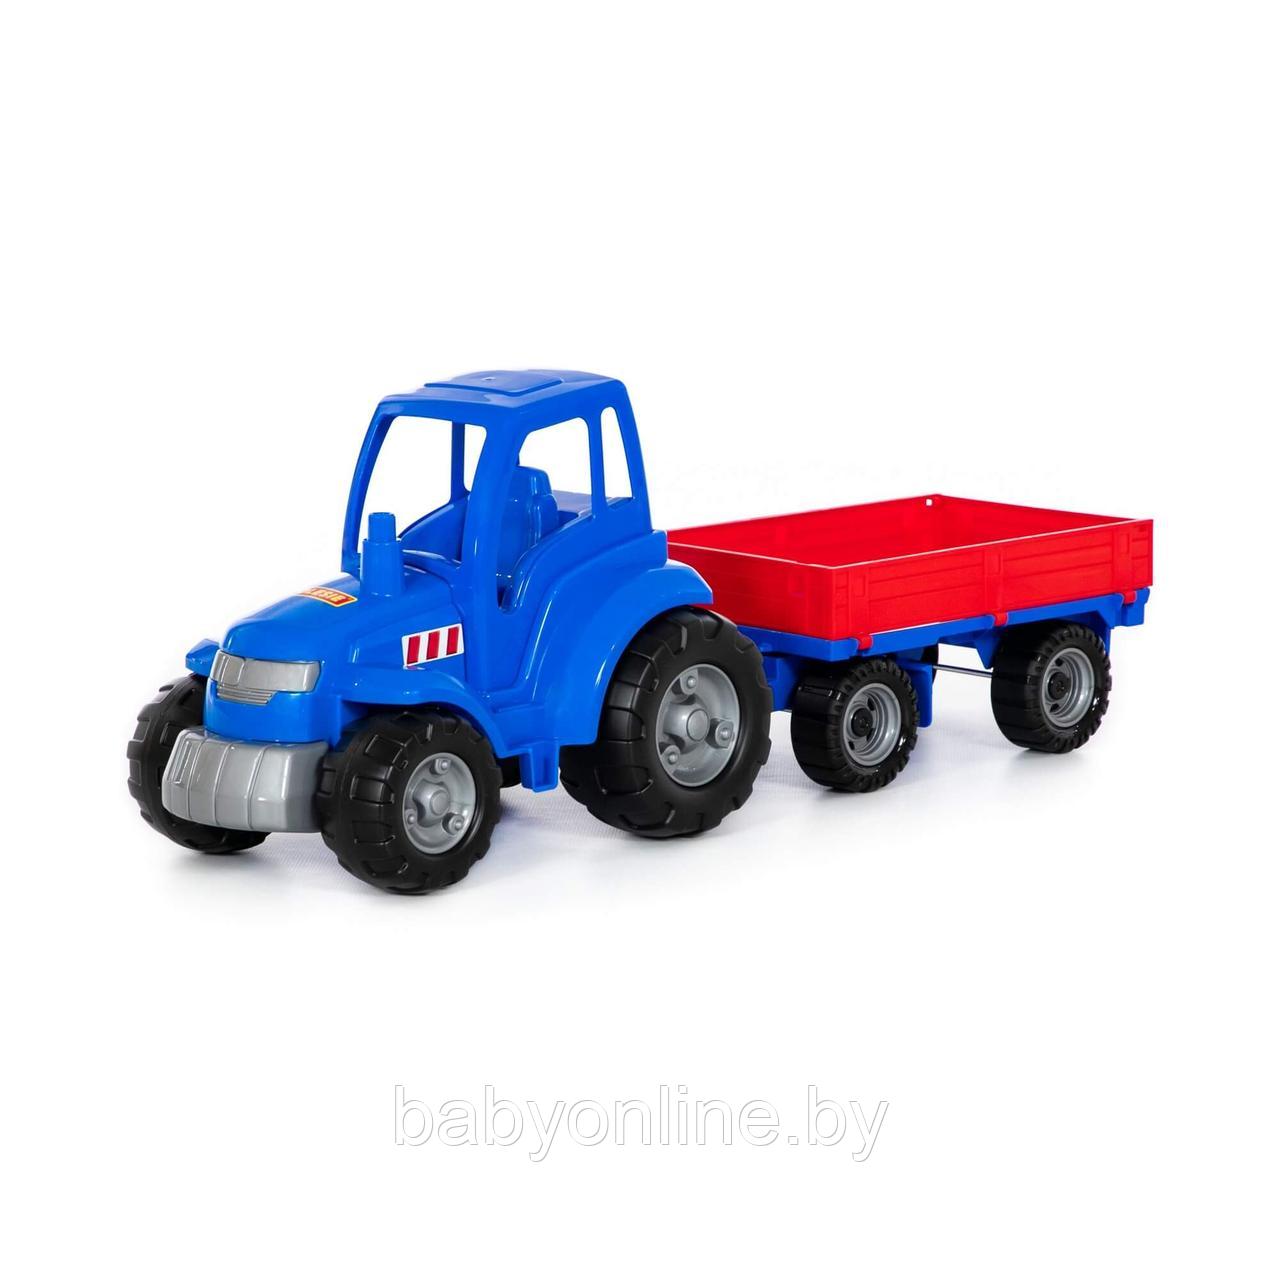 Трактор Чемпион синий с прицепом в сеточке арт 84743 Полесье